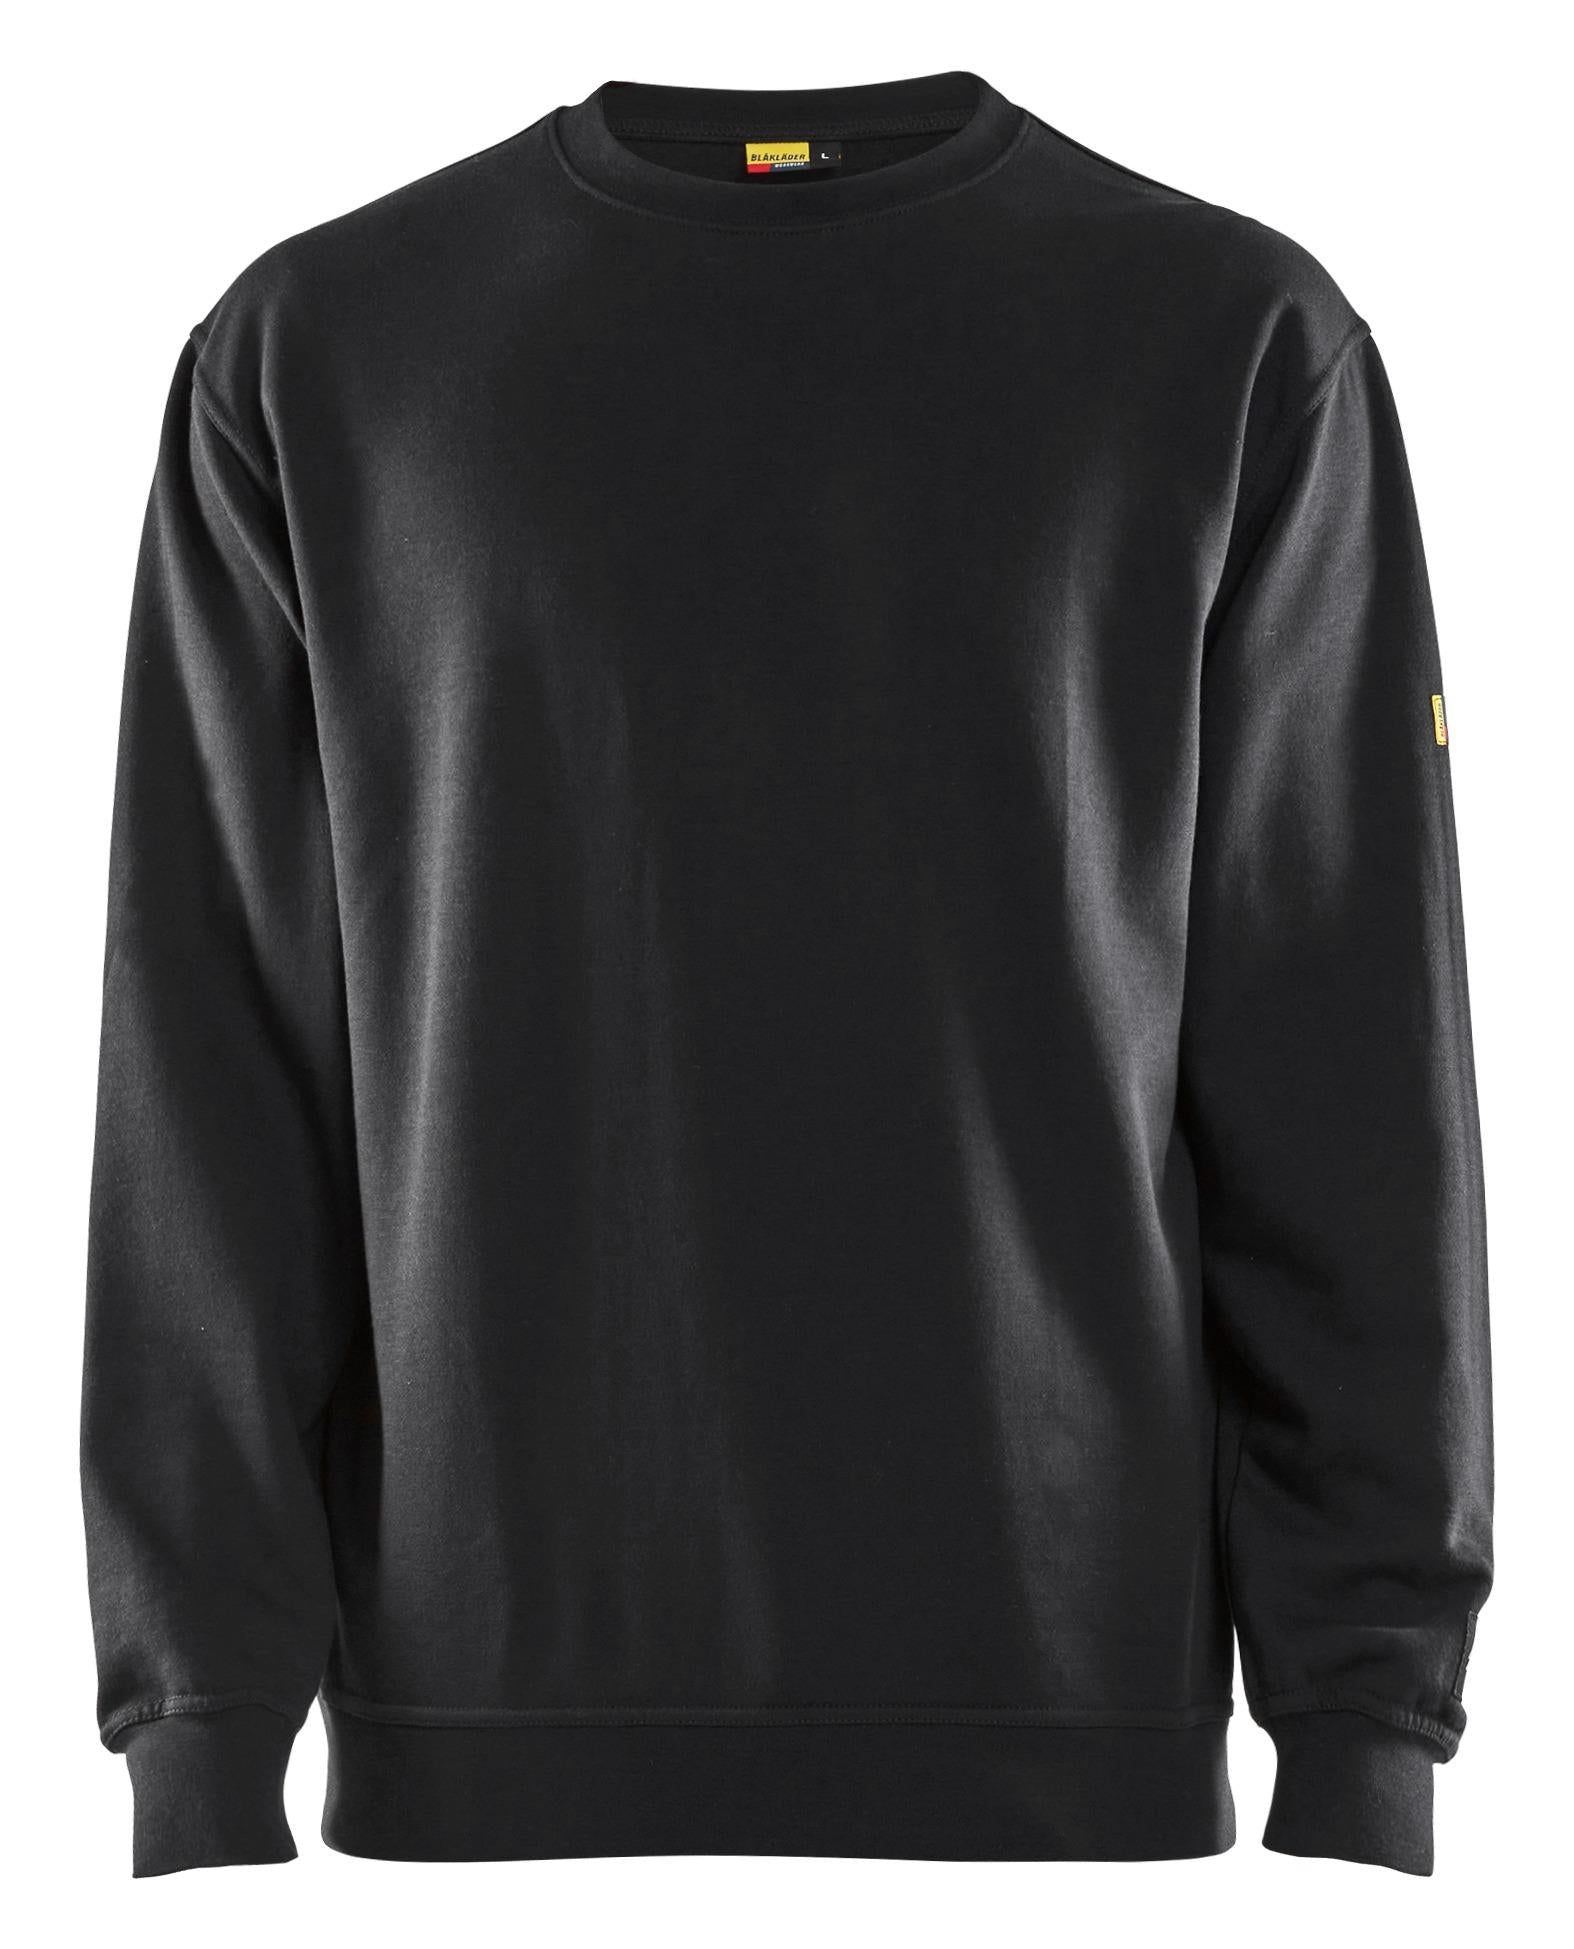 Blaklader black flame-retardant antistatic sweatshirt #3074